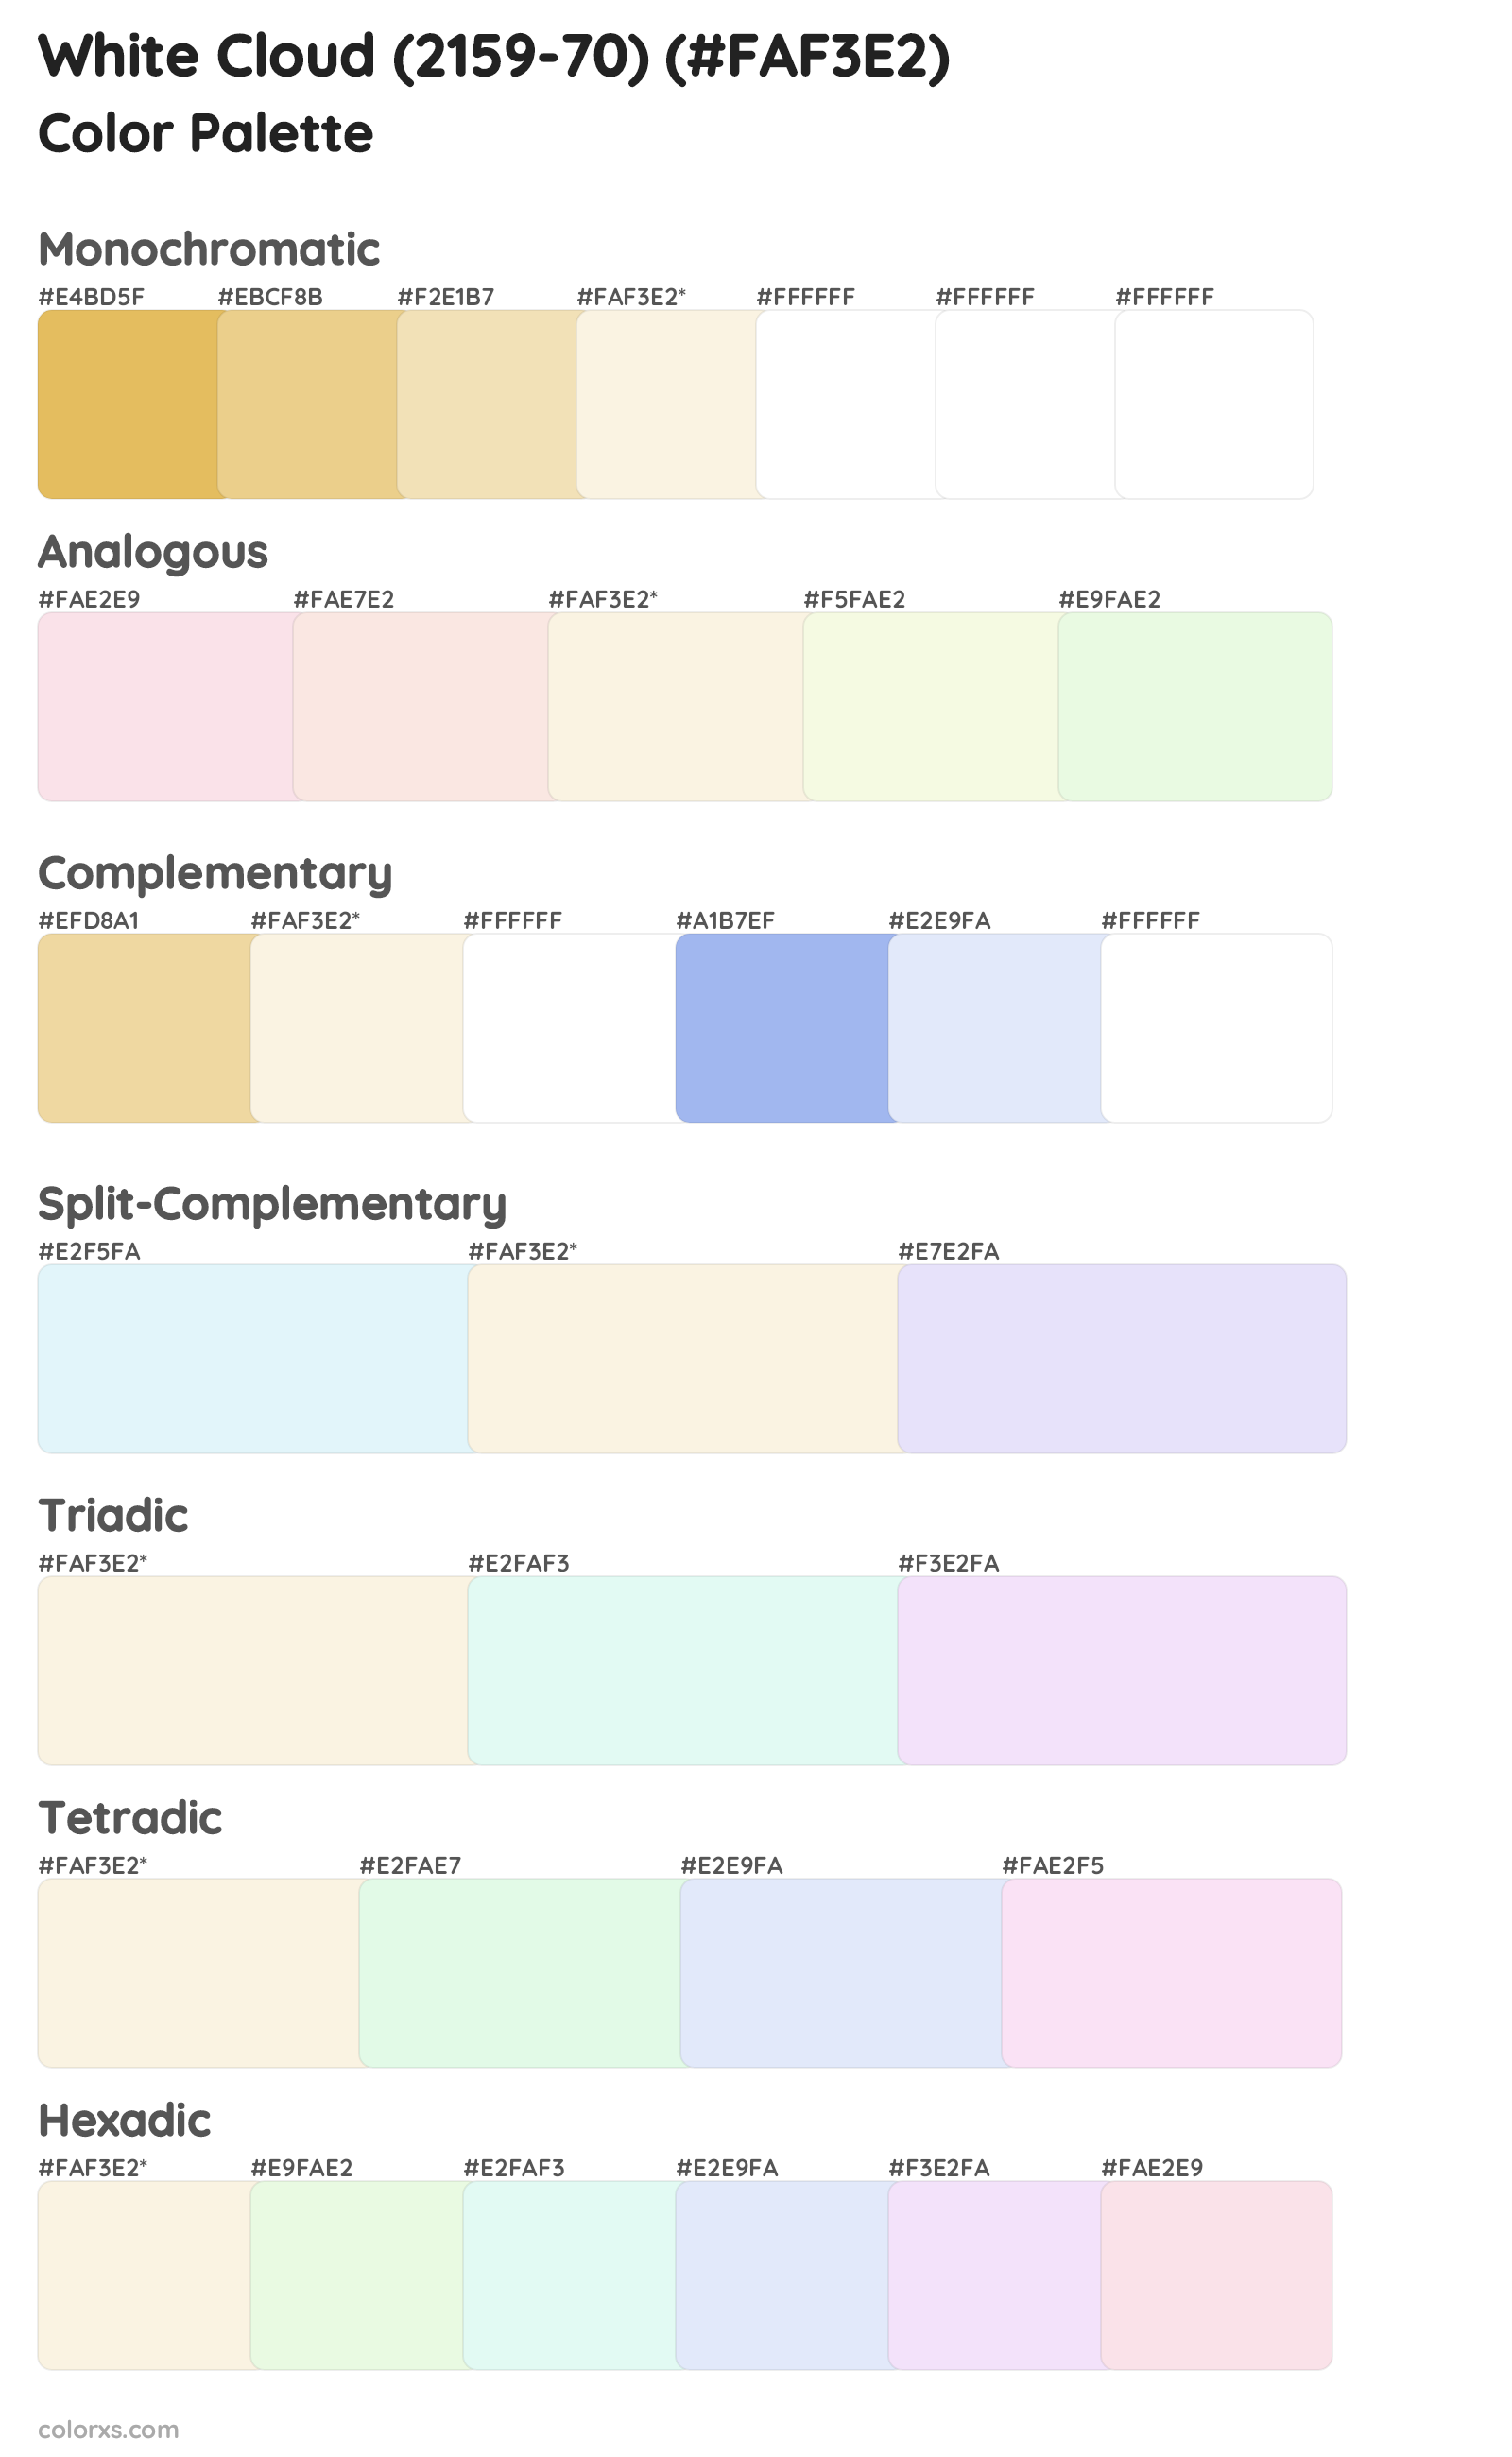 White Cloud (2159-70) Color Scheme Palettes